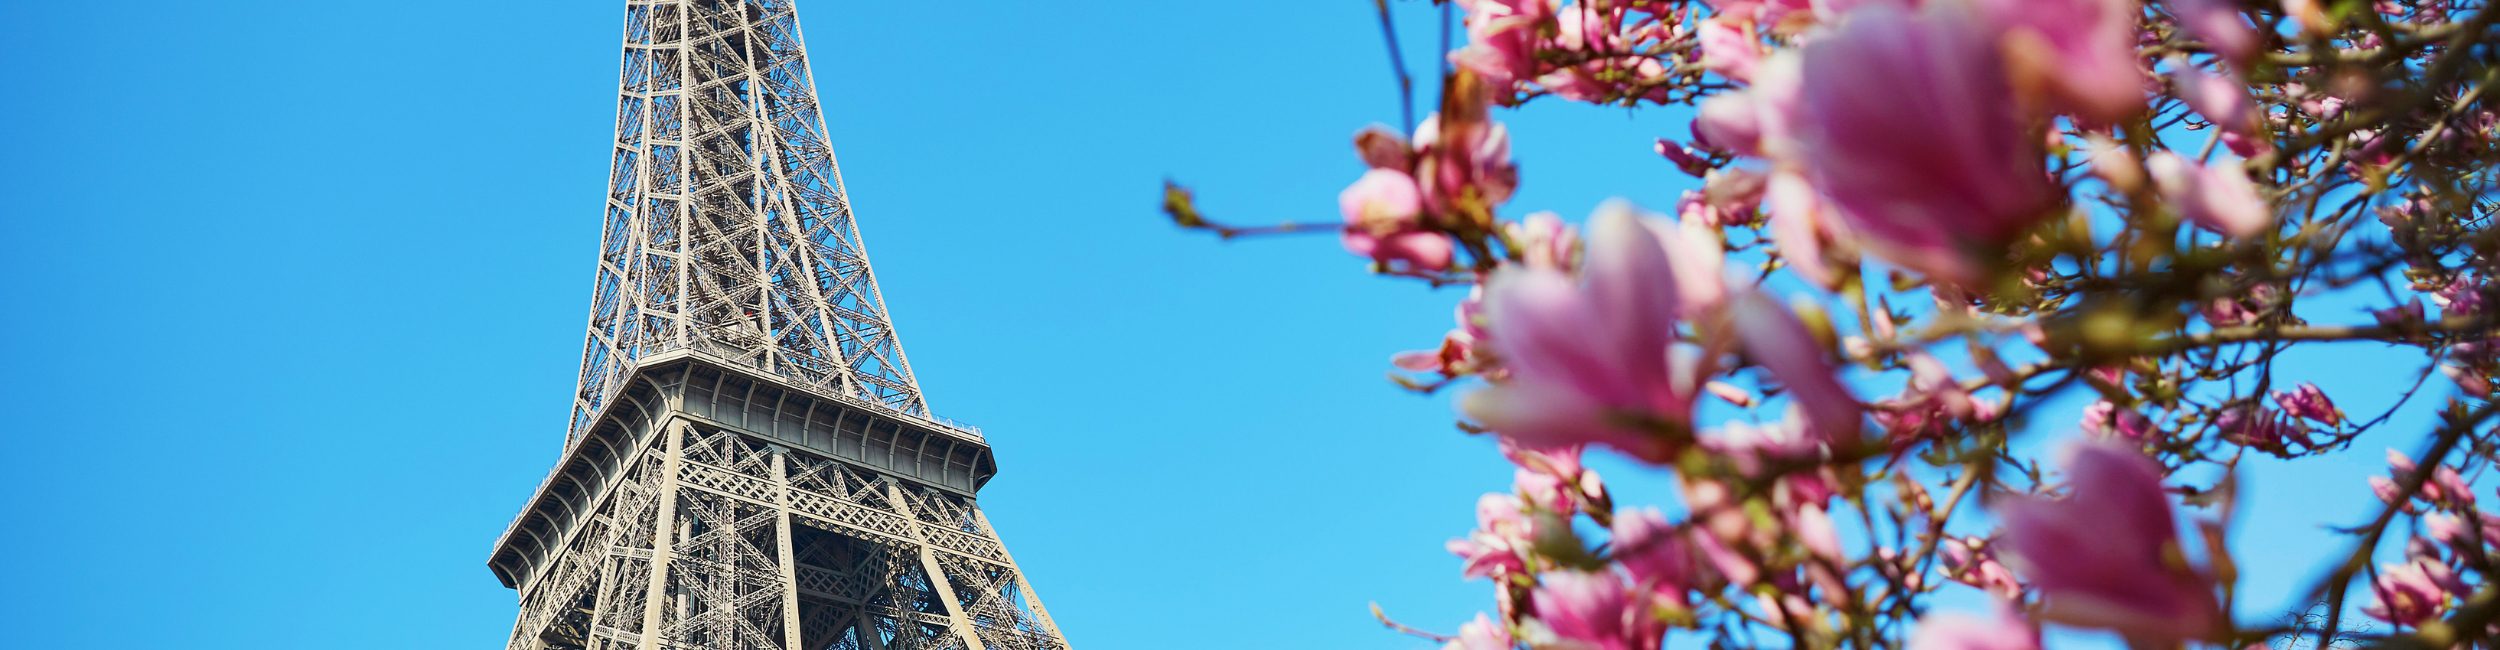 A shot of Eiffel Tower